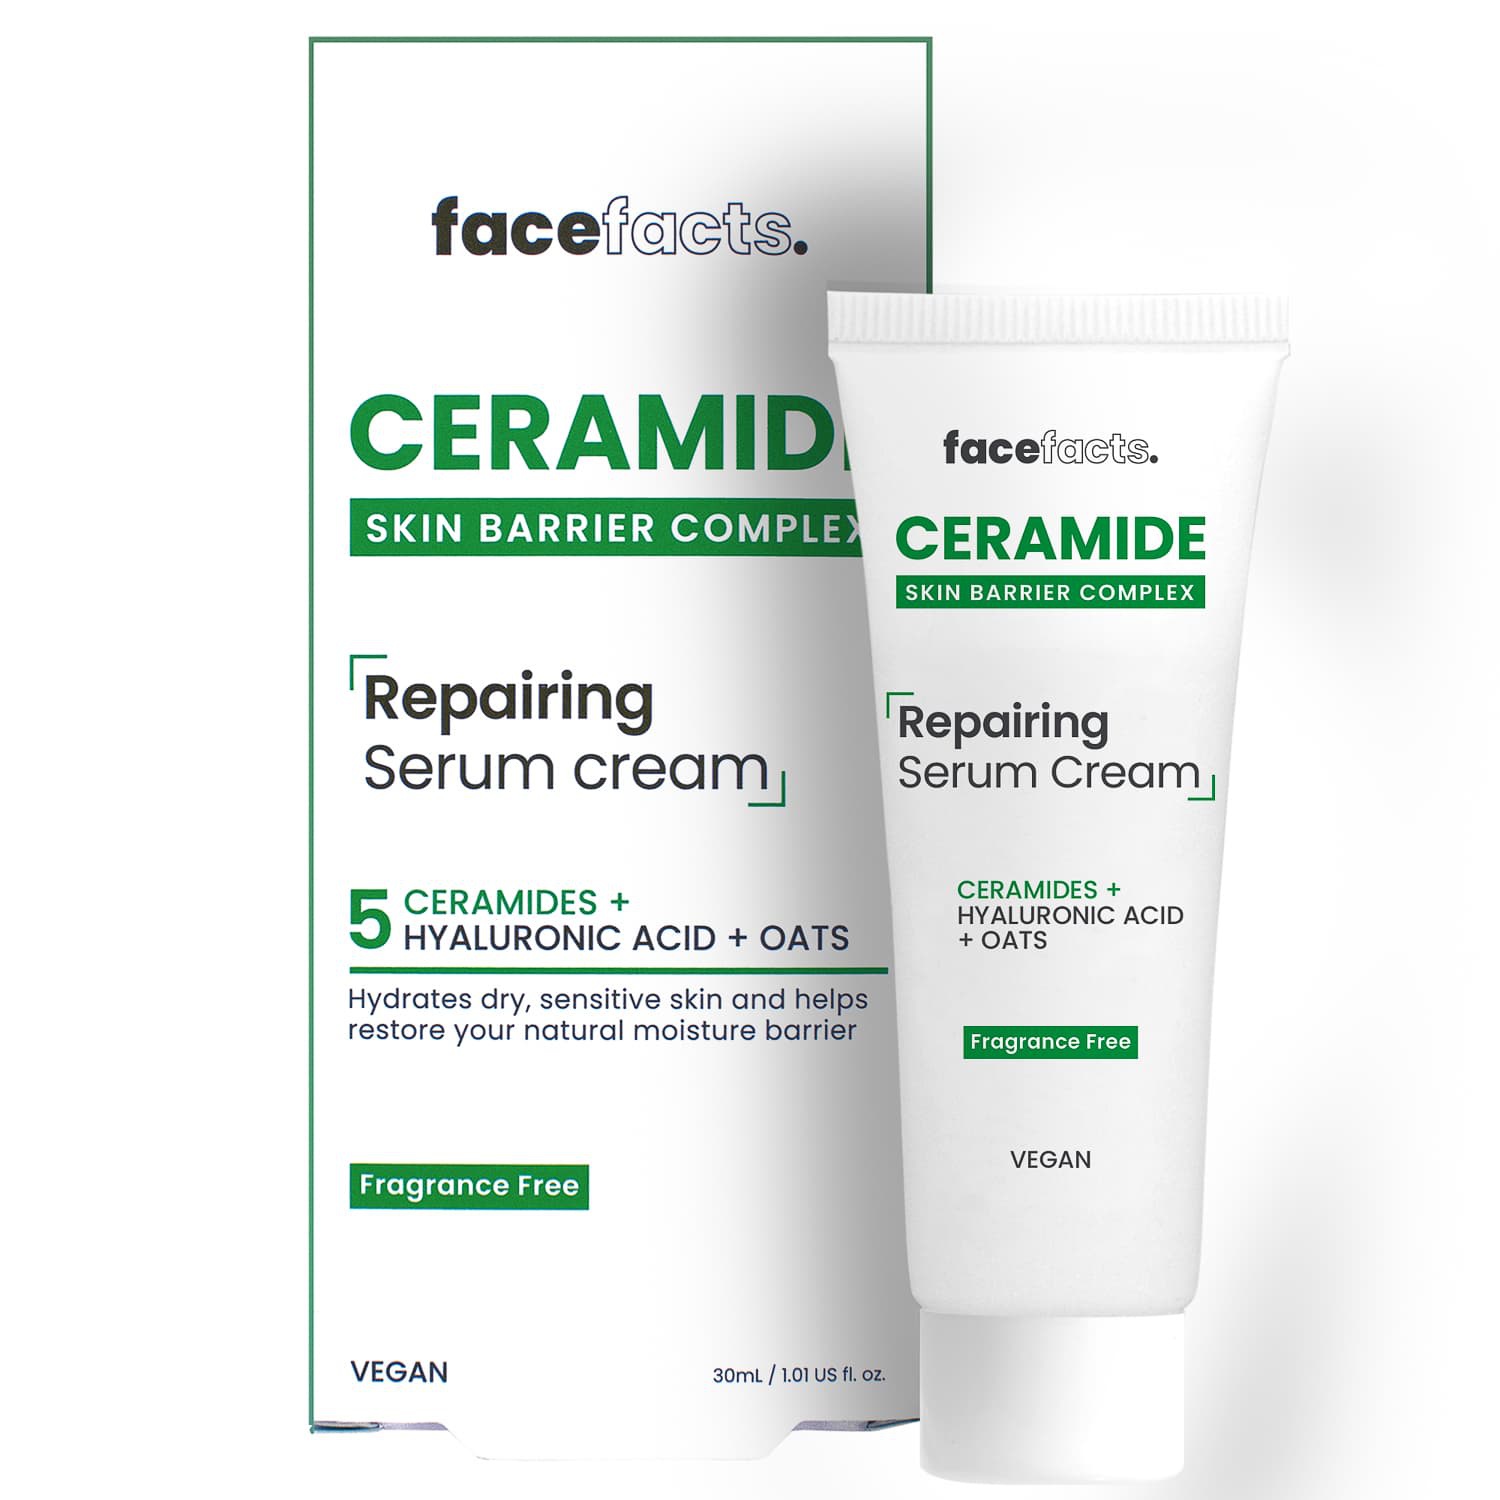 Face facts Ceramide Repair Serum